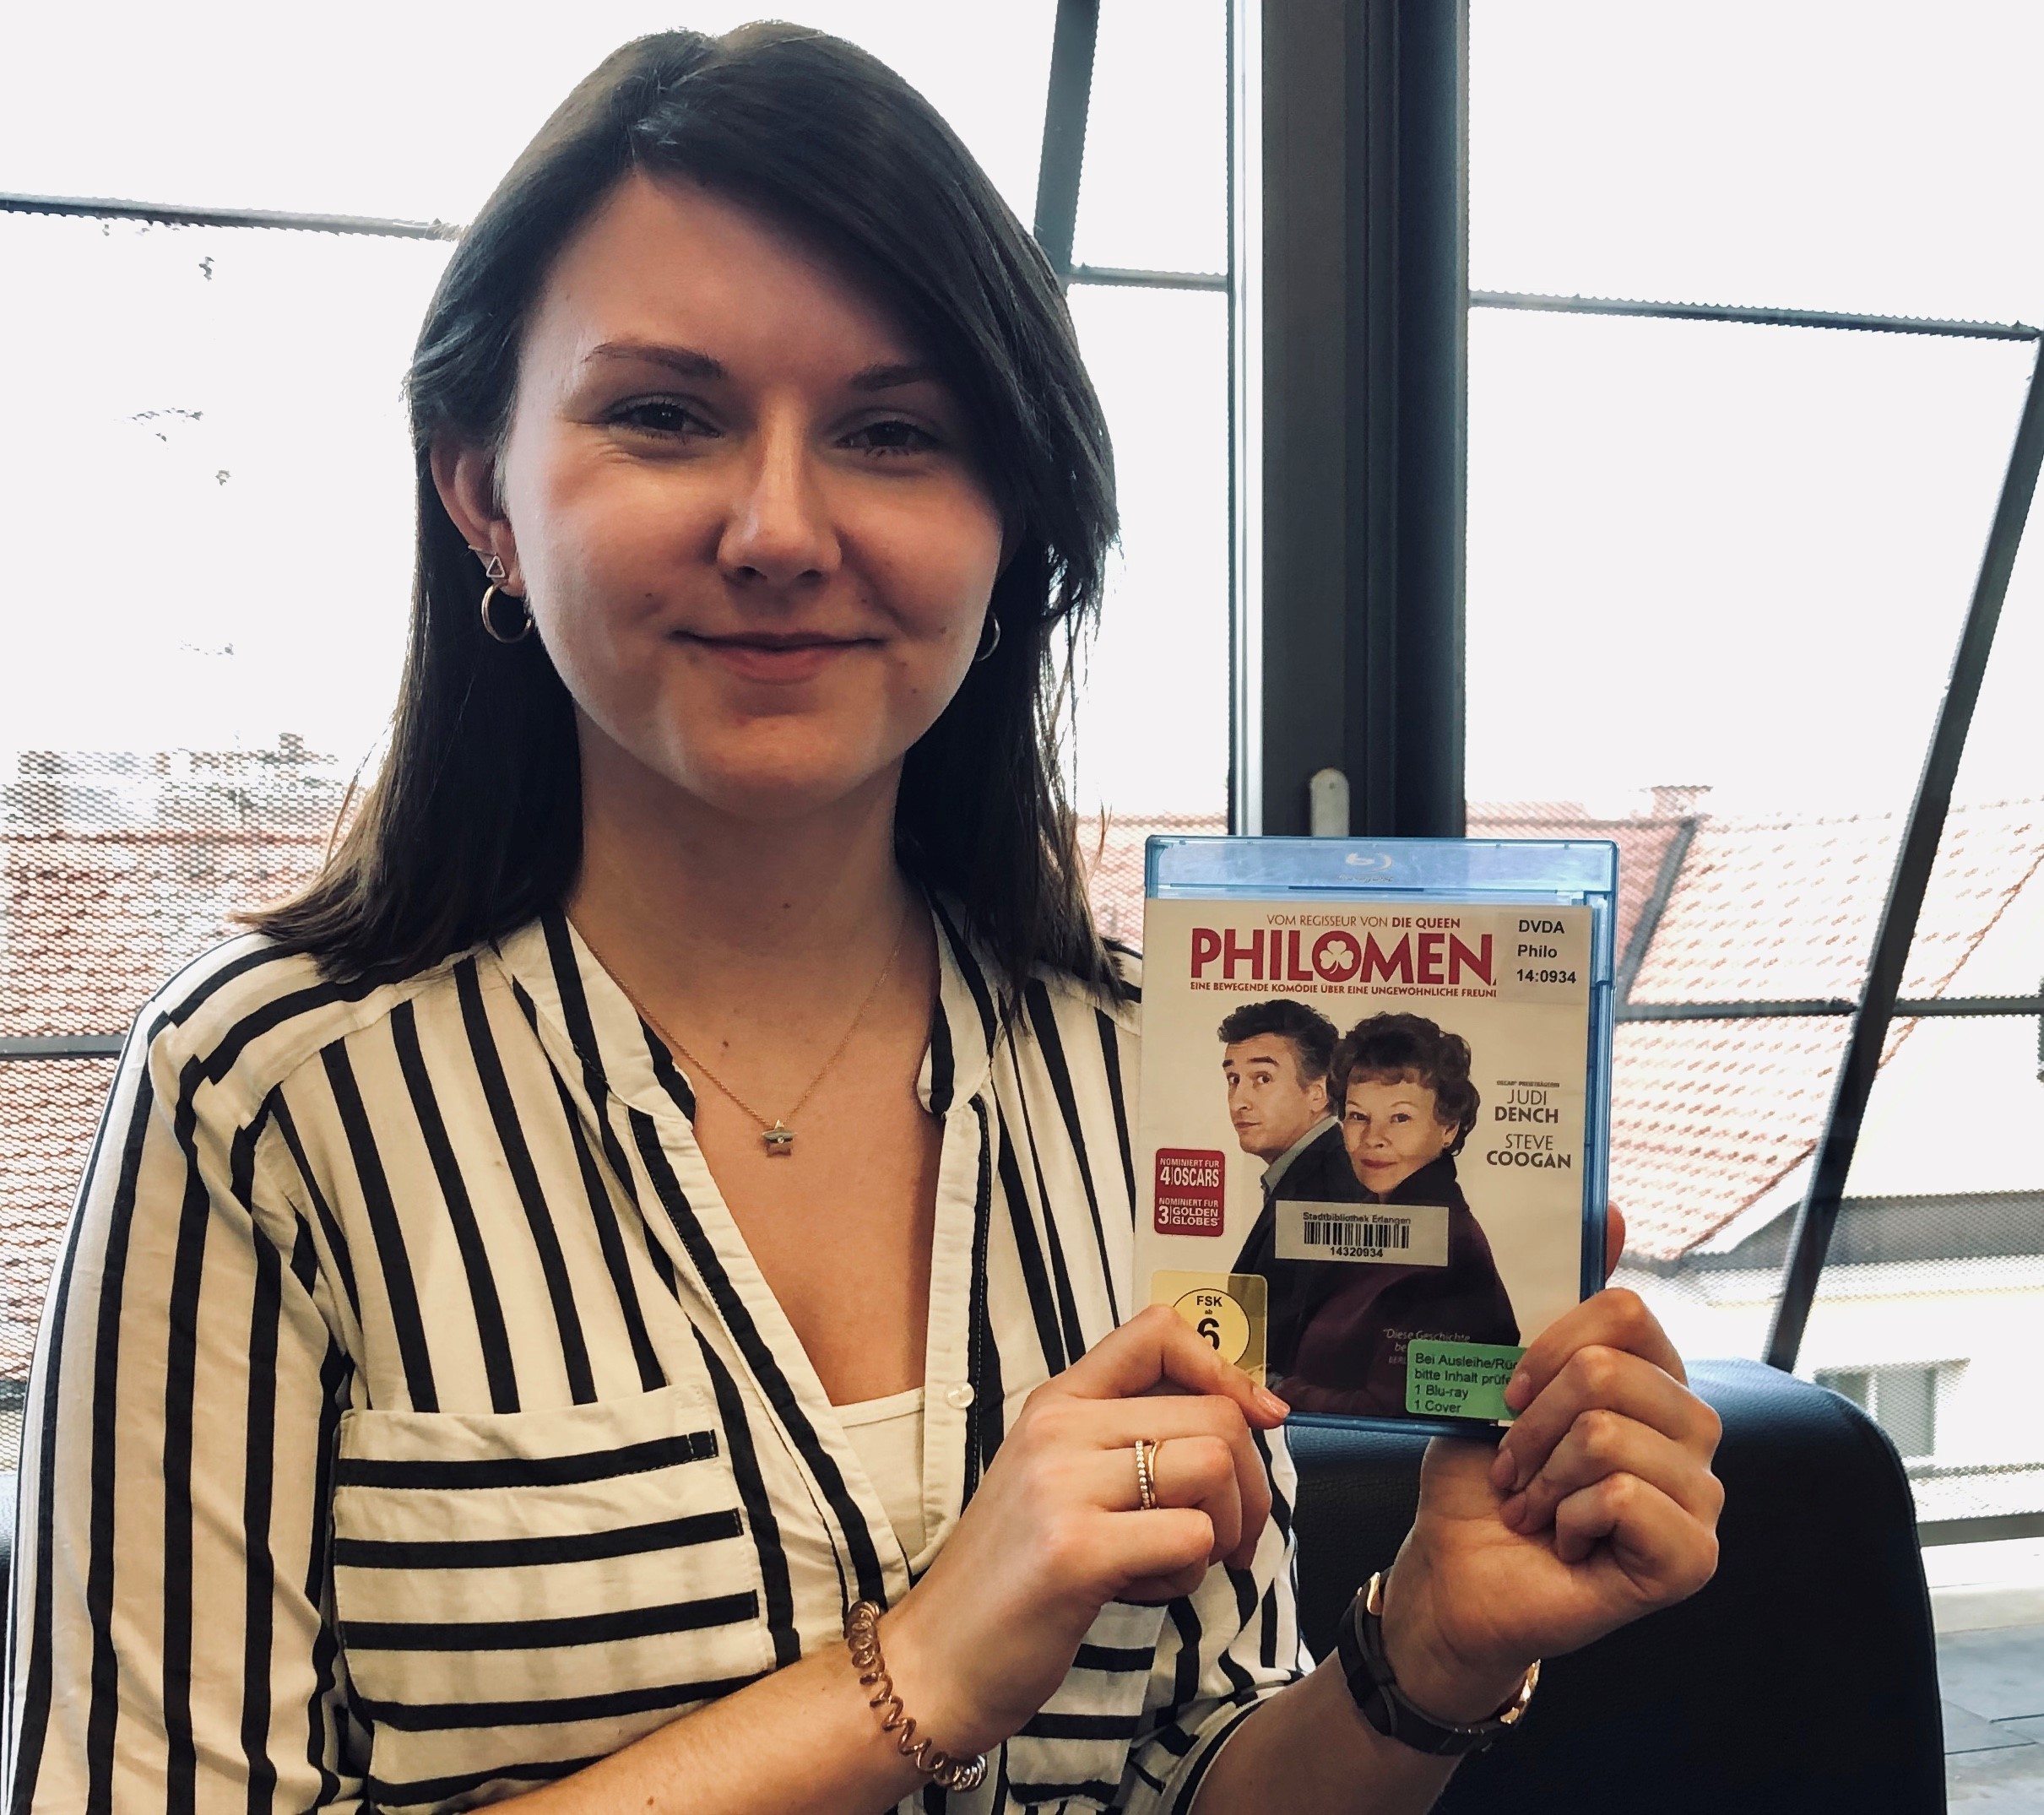 Mitarbeiterin zeigt die DVD Philomena mit Judi Dench